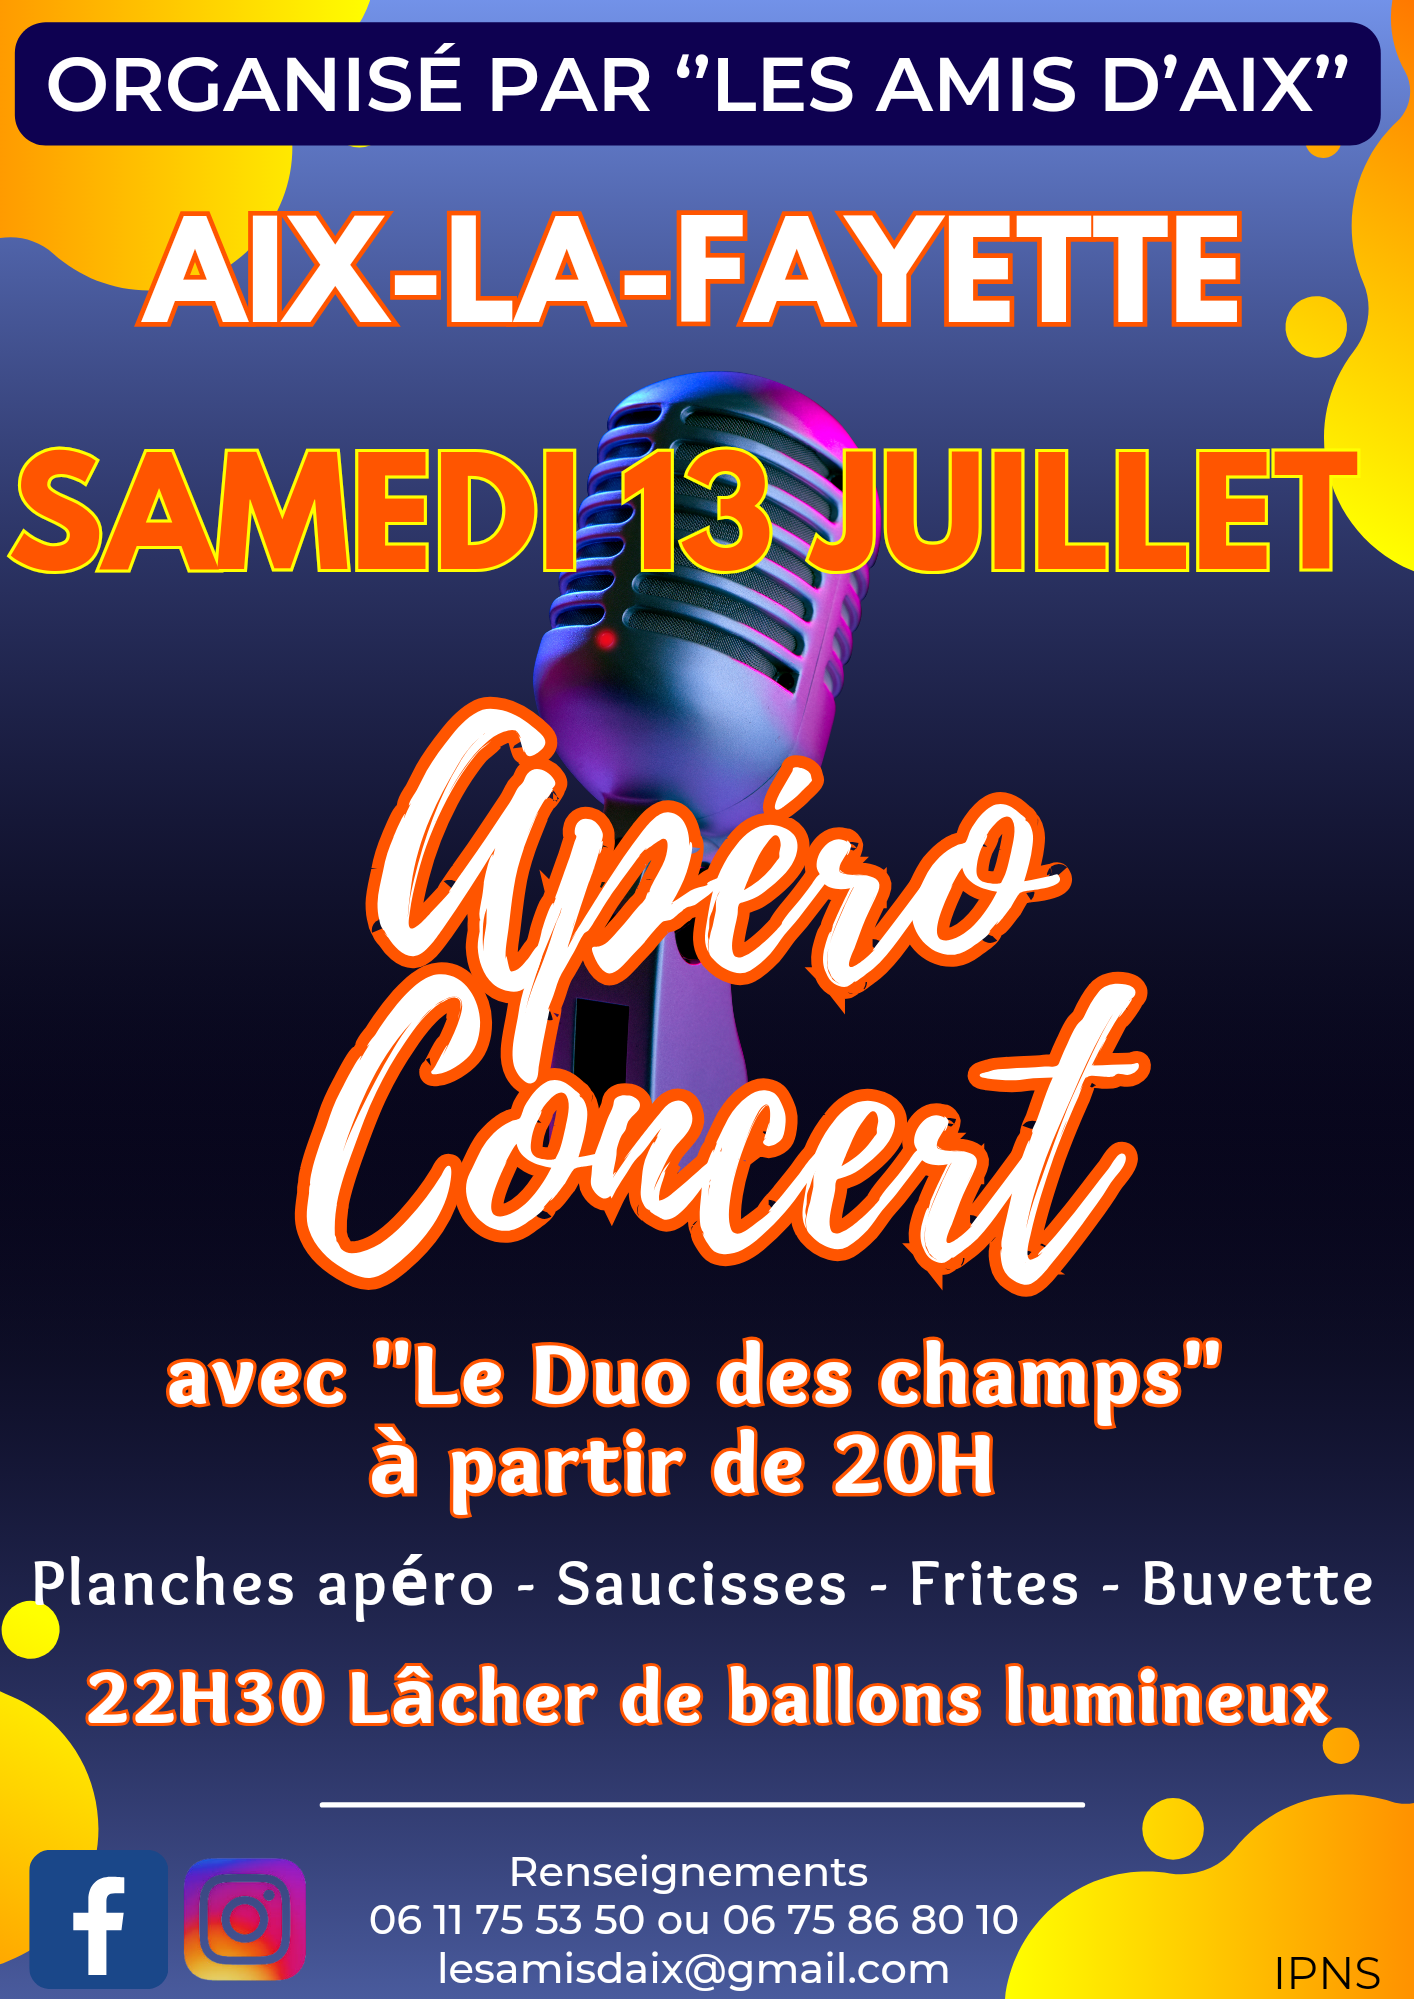 Apéro Concert // Aix-la-Fayette